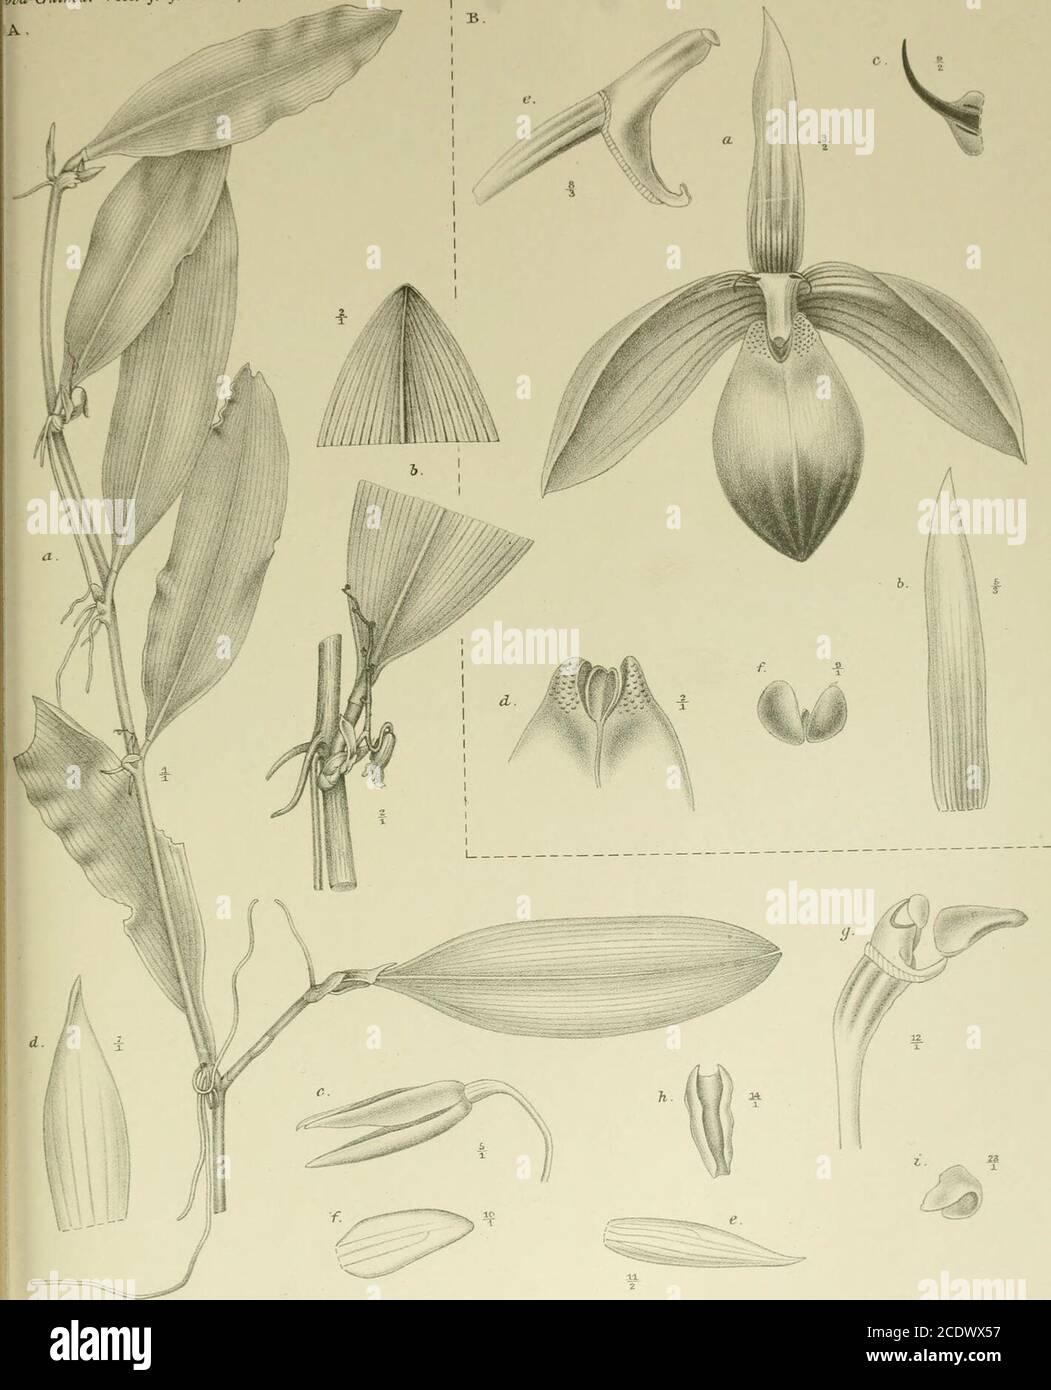 . Nova Guinea : résultats de l'expédition scientifique néerlandaise à la Nouvelle-Guinée .. . R. Naladipoera et J. J. Smilh del. Fa. P. W. M. Trap impr. CVI. A. Bulbophyllum breviscapum J. J. S. a. Planta /i- b. Inflorescentia /,. c. Flos /,. d. Sepalum dorsale 7/,. e. Sepalum latérale /2-/. Petalum ,n/,. g. Labellum et gynostemium */,.//. Labellum supra visum */,.i. Anthera 23/1. B. Bulbophyllum Papilio J. J. S. a. Flos 3/2. b. Sepalum dorsale 5/3. c. Petalum •/,. d. Basis labelli */i- e. Gynostemium 8/3./. Pollinarium °/,. n •a-Guinca. VIII. J. J. Smith, Orchirteae Cl I. R Natadipoera et J. Stock Photo